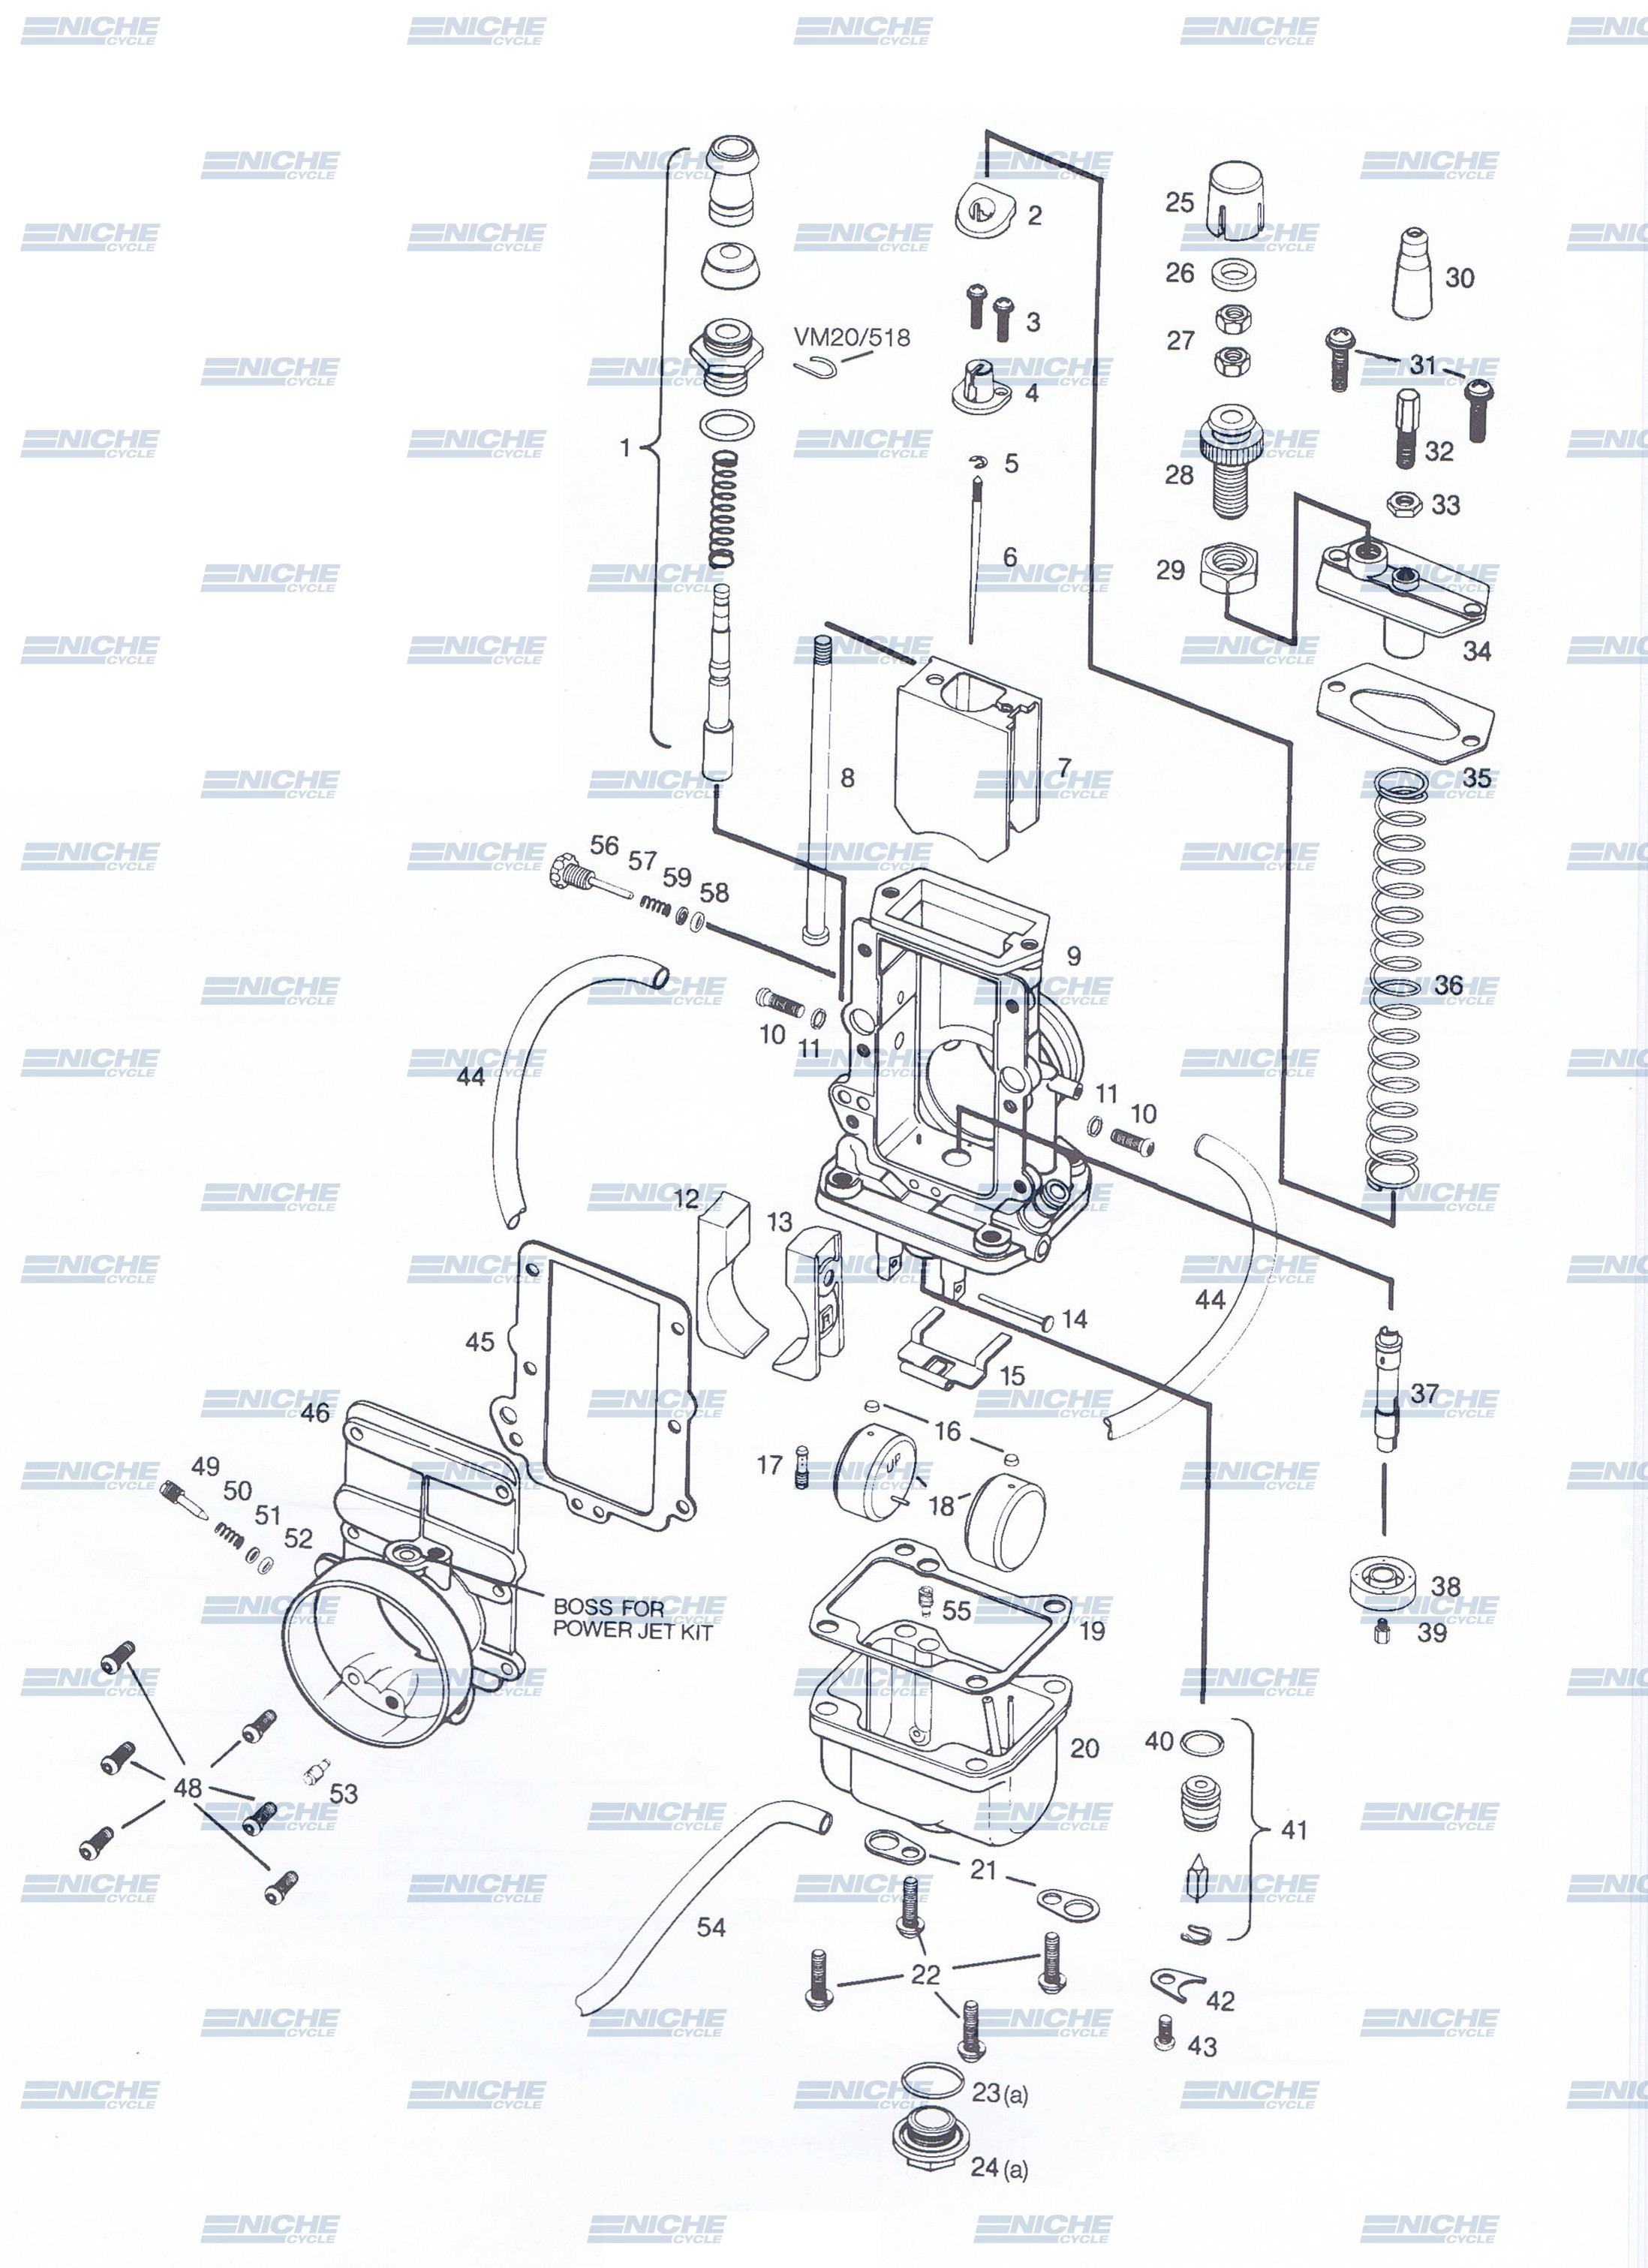 Mikuni TM34-2 Exploded View - Replacement Parts Listing TM34-2_parts_list